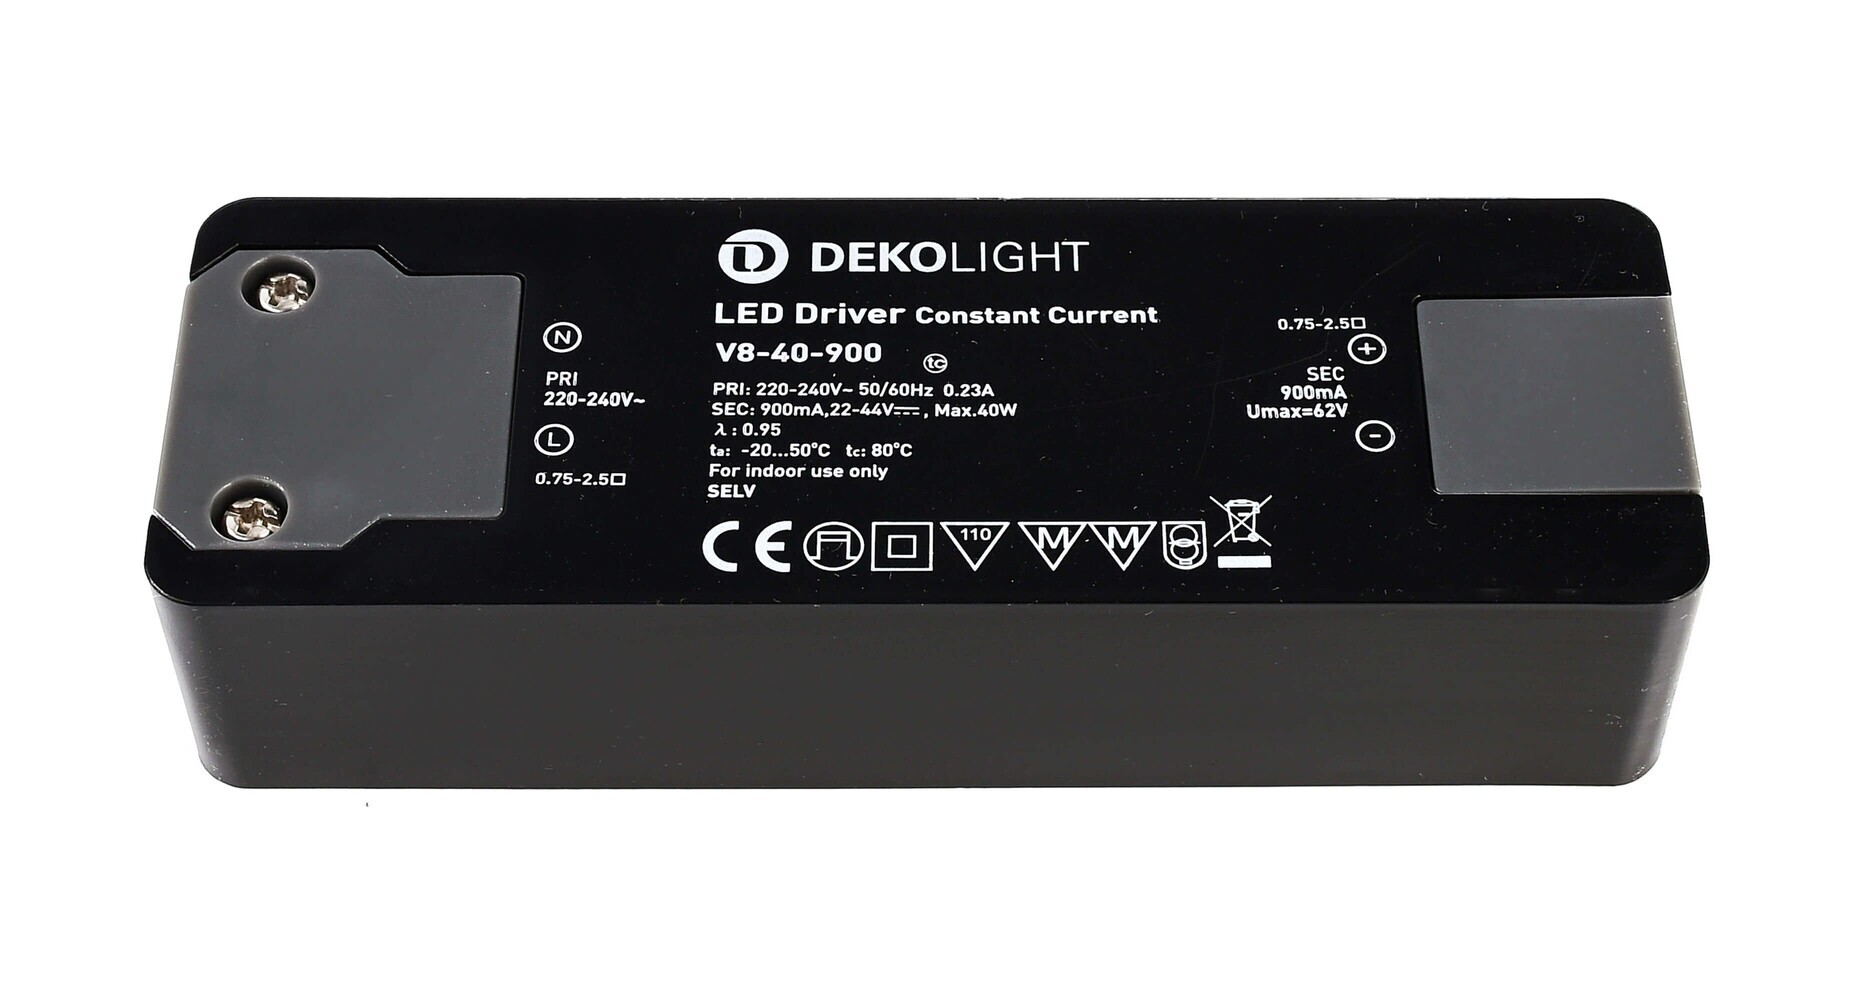 Hochwertiges Deko-Light LED Netzteil mit stromkonstanter Funktion und bester Performance